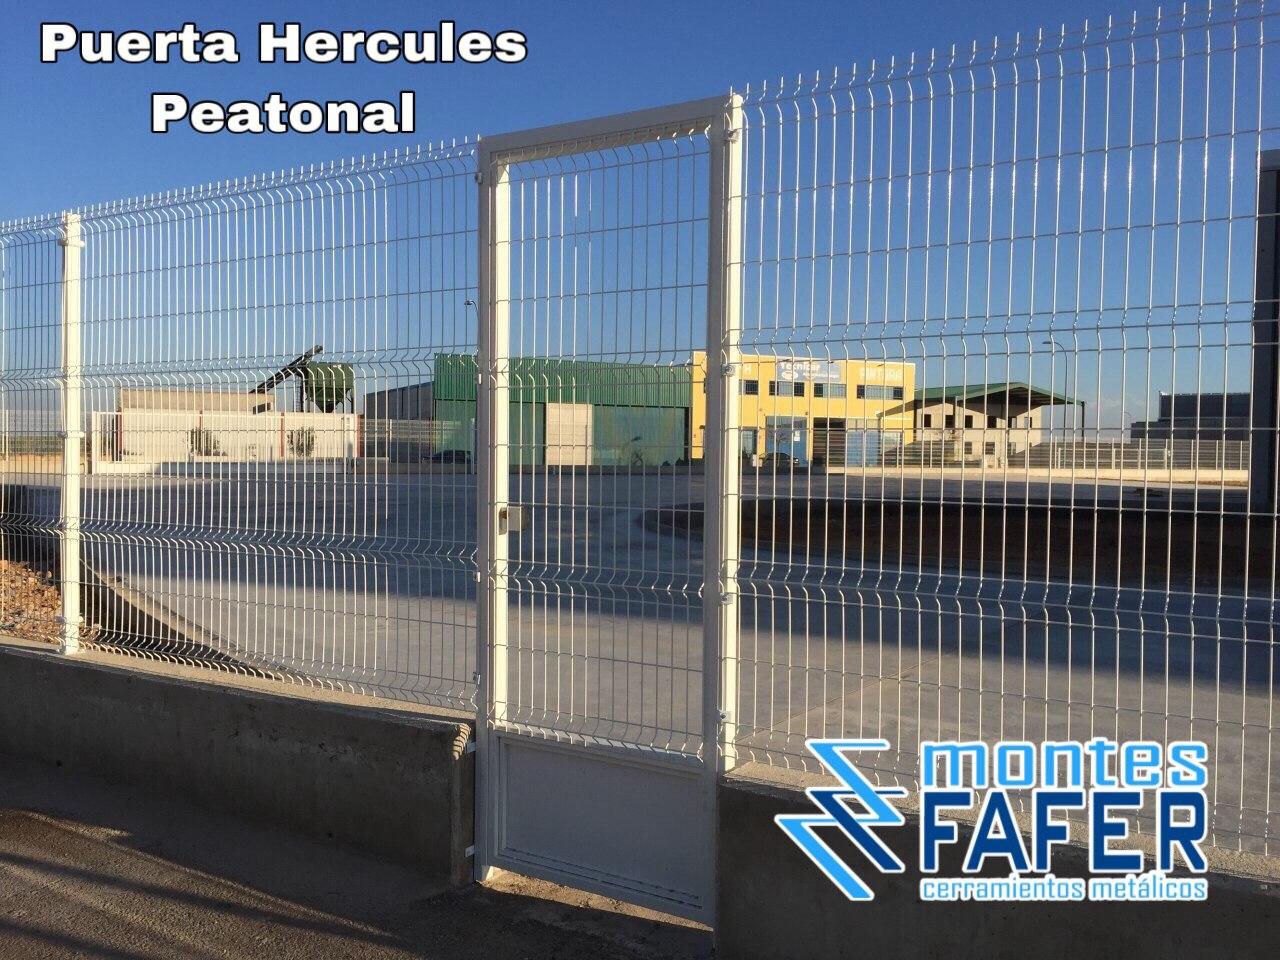 Puerta hercules peatonal MontesFafer